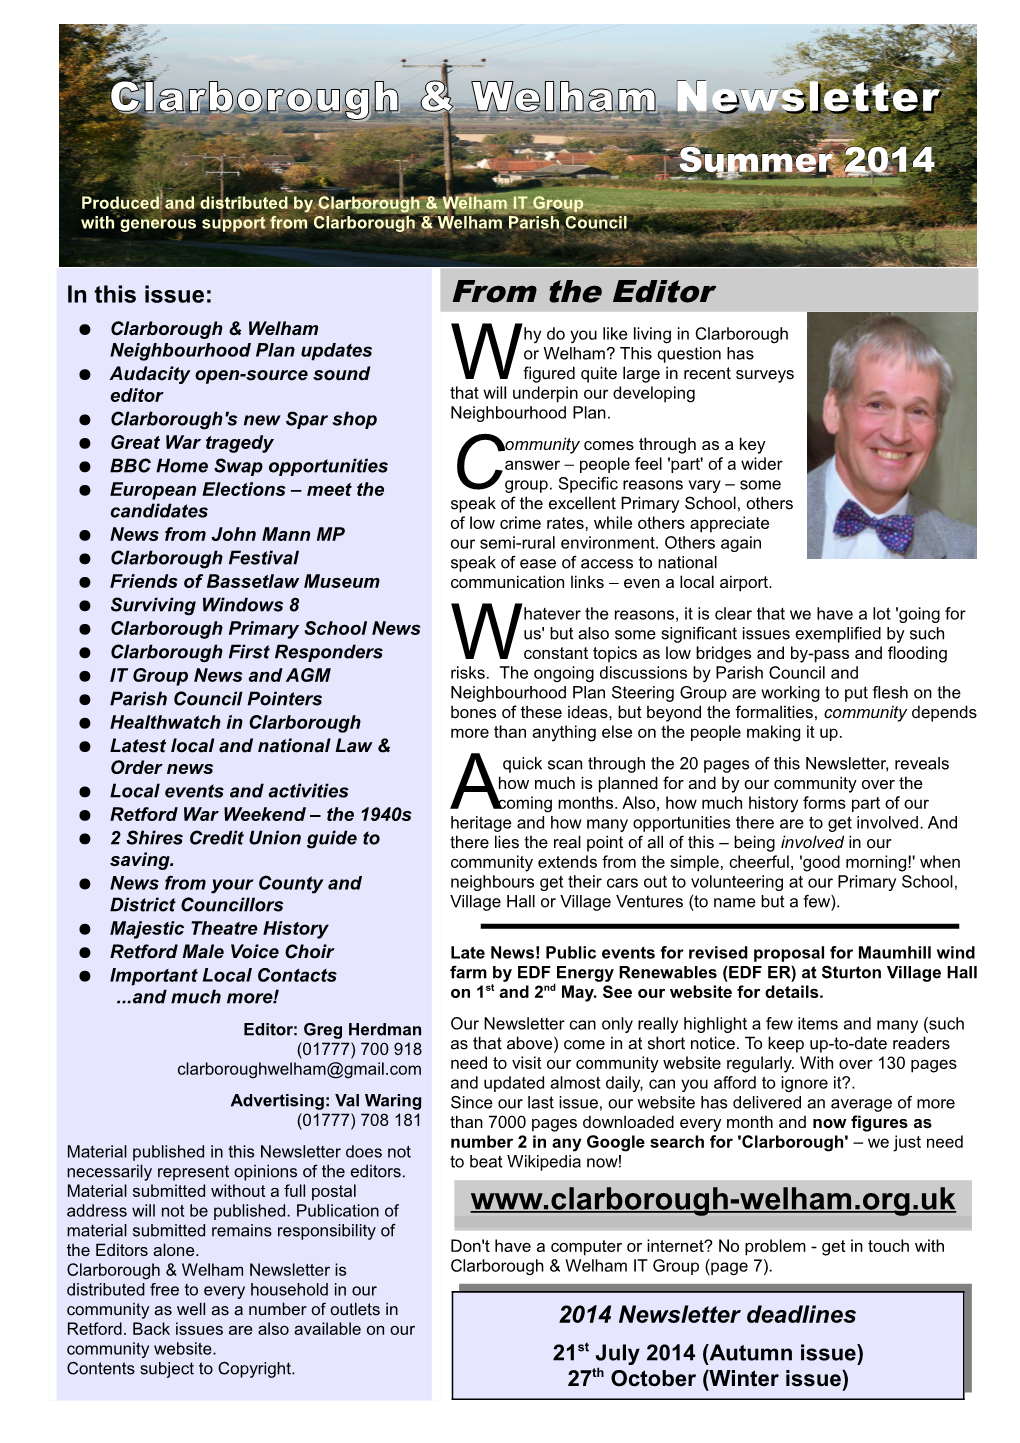 Clarborough & Welham Newsletter : Summer 2014